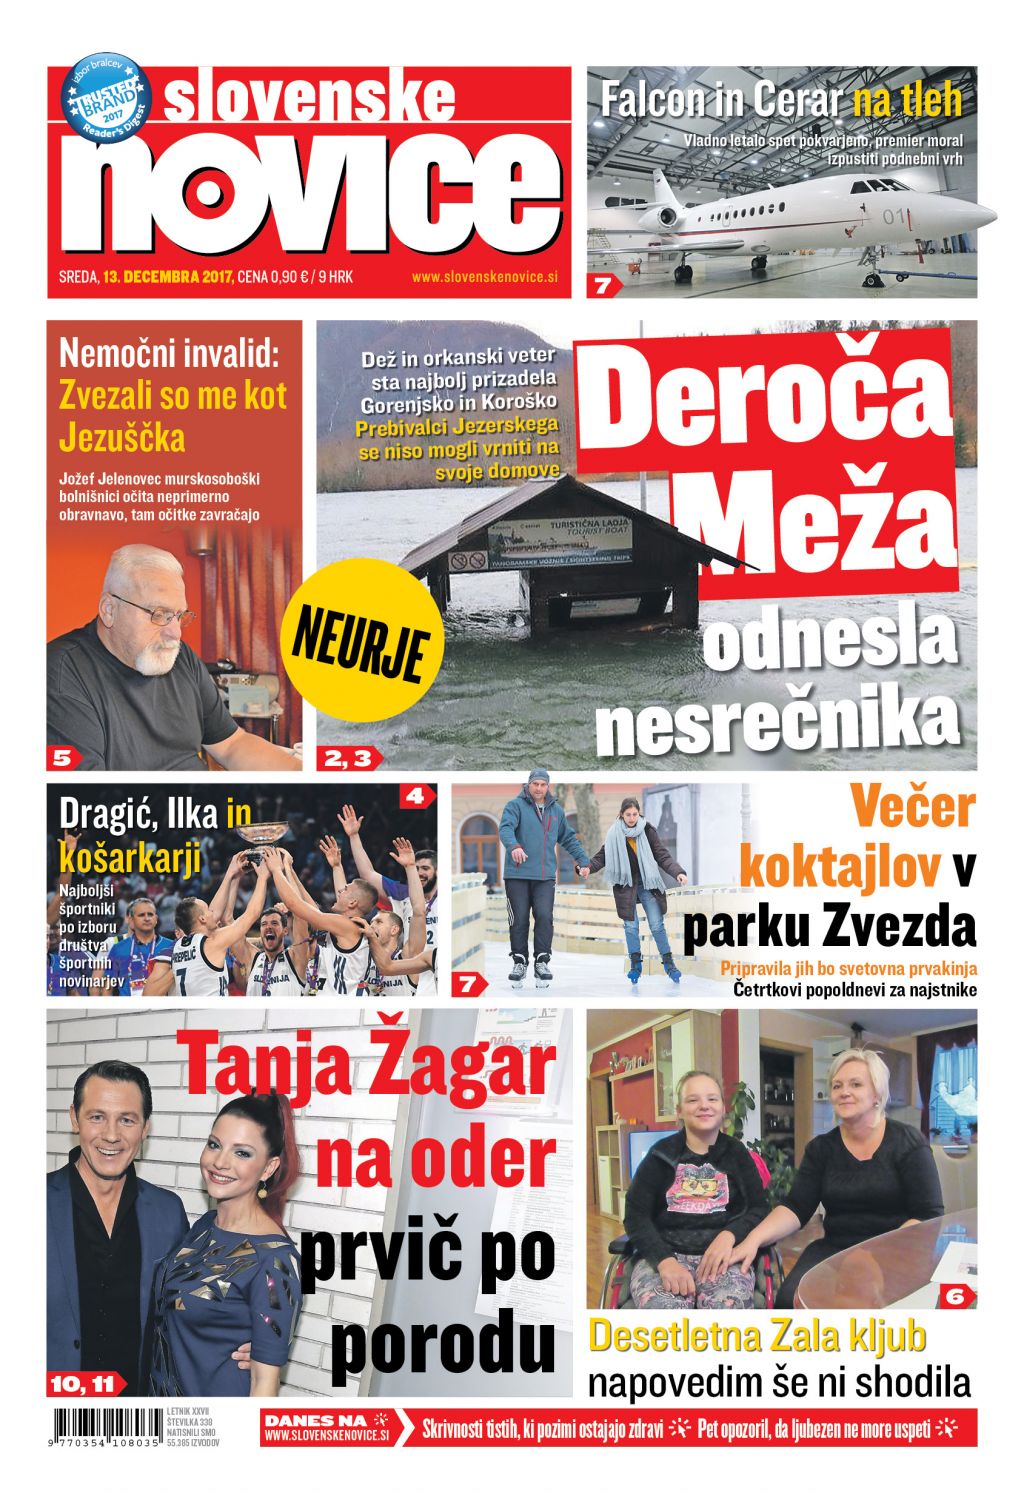 V tiskani izdaji sredinih Slovenskih novic preberite: Deroča Meža odnesla nesrečnika